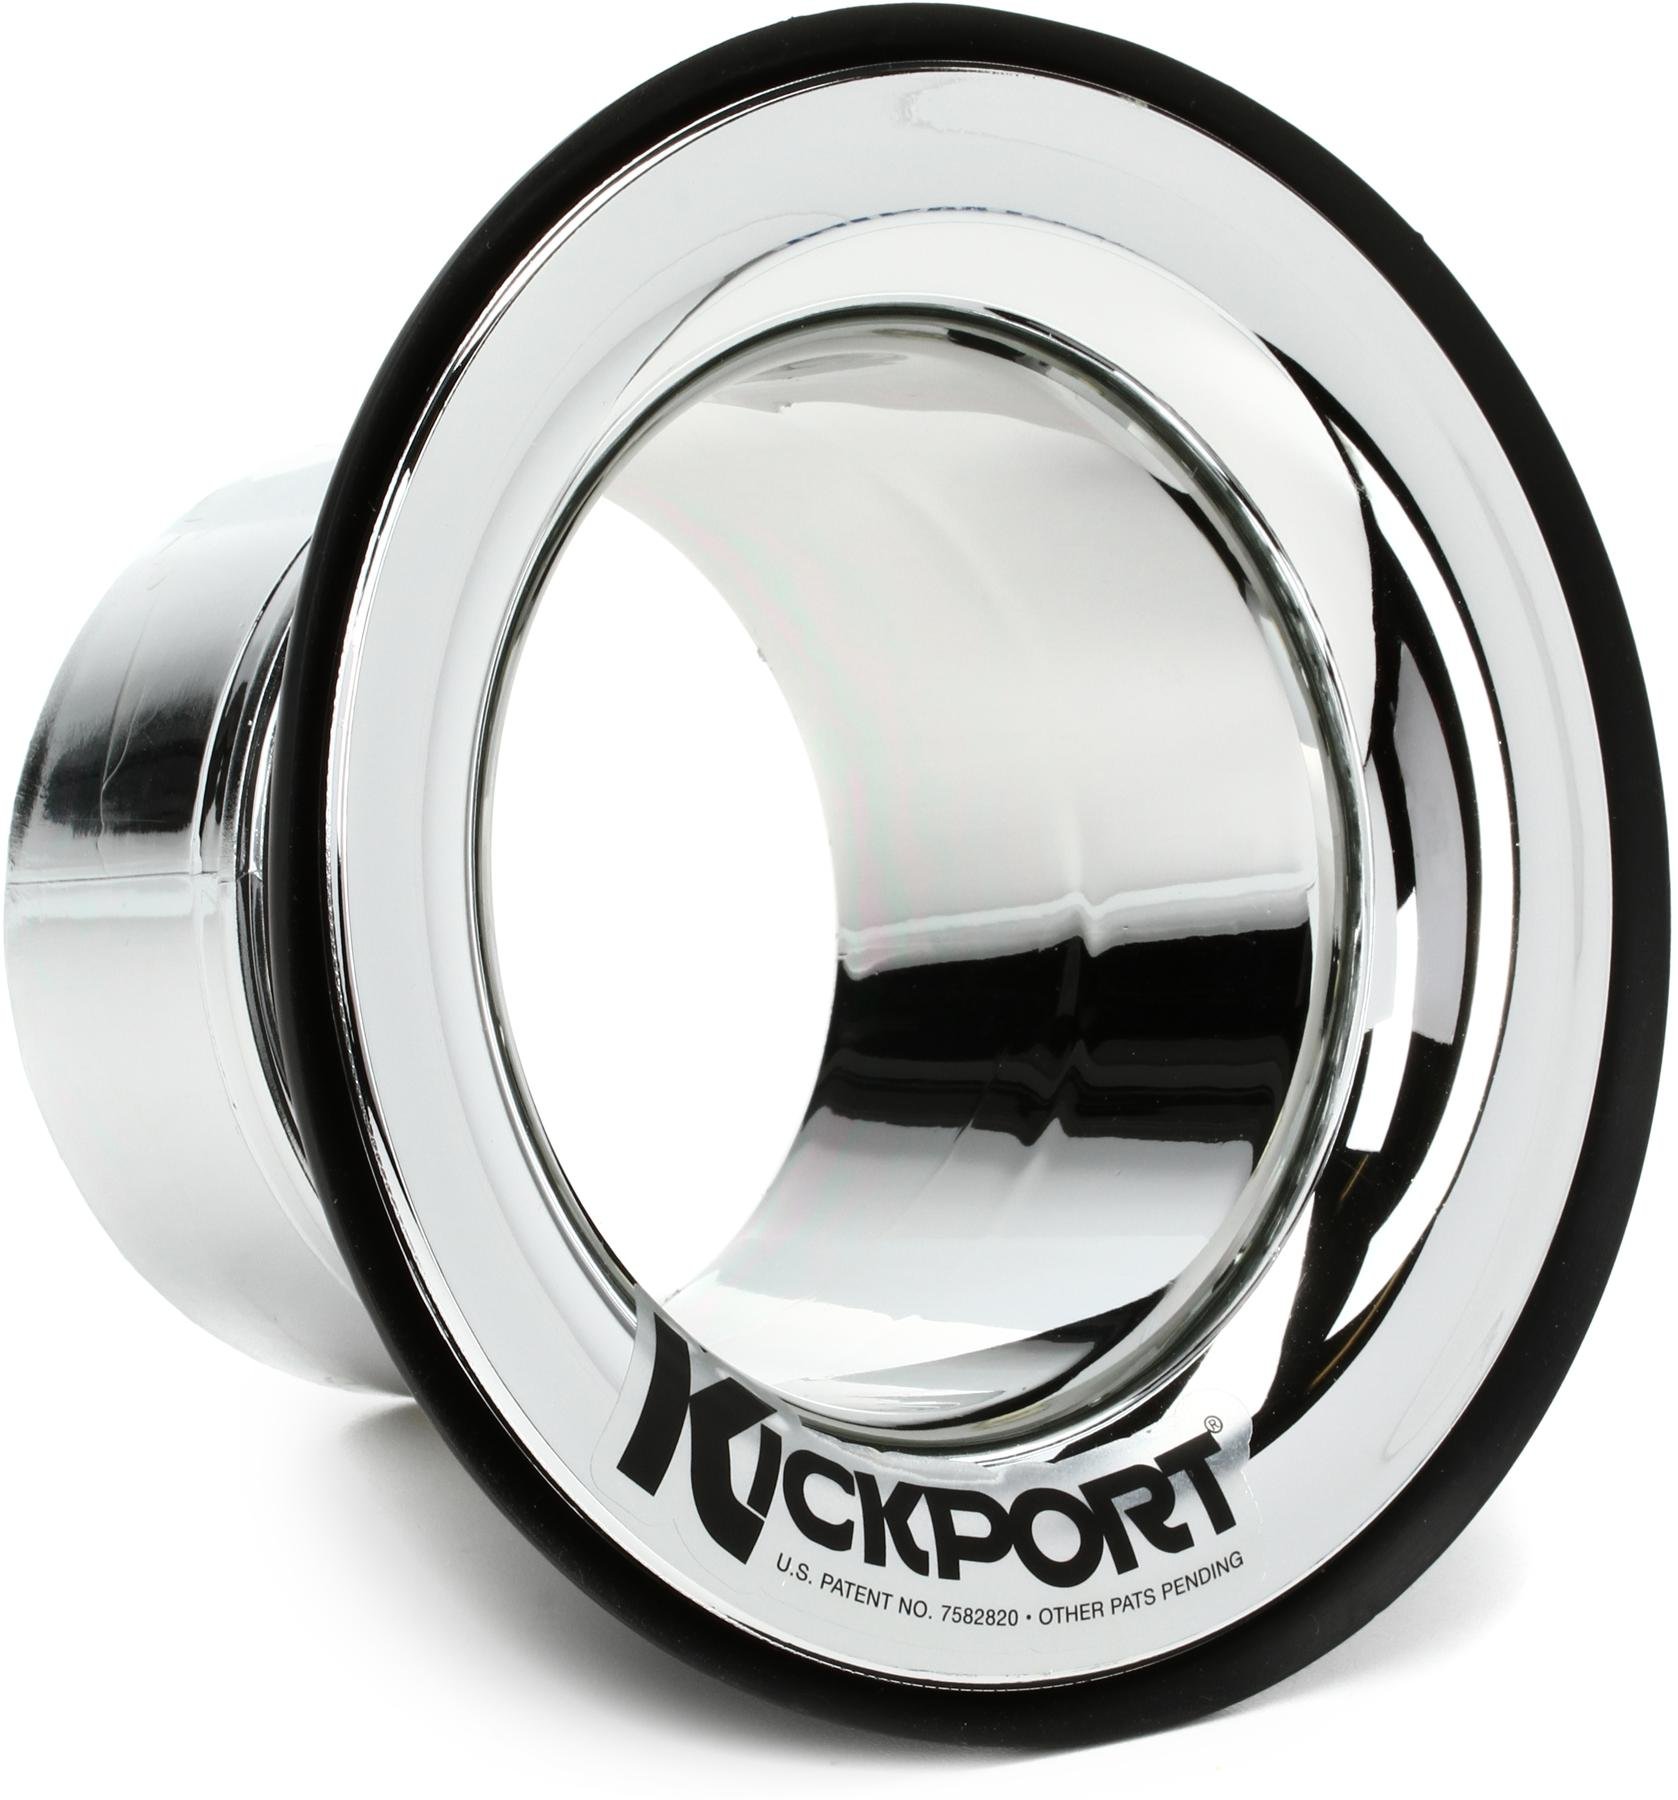 Kickport Kickport T-Ring Clear